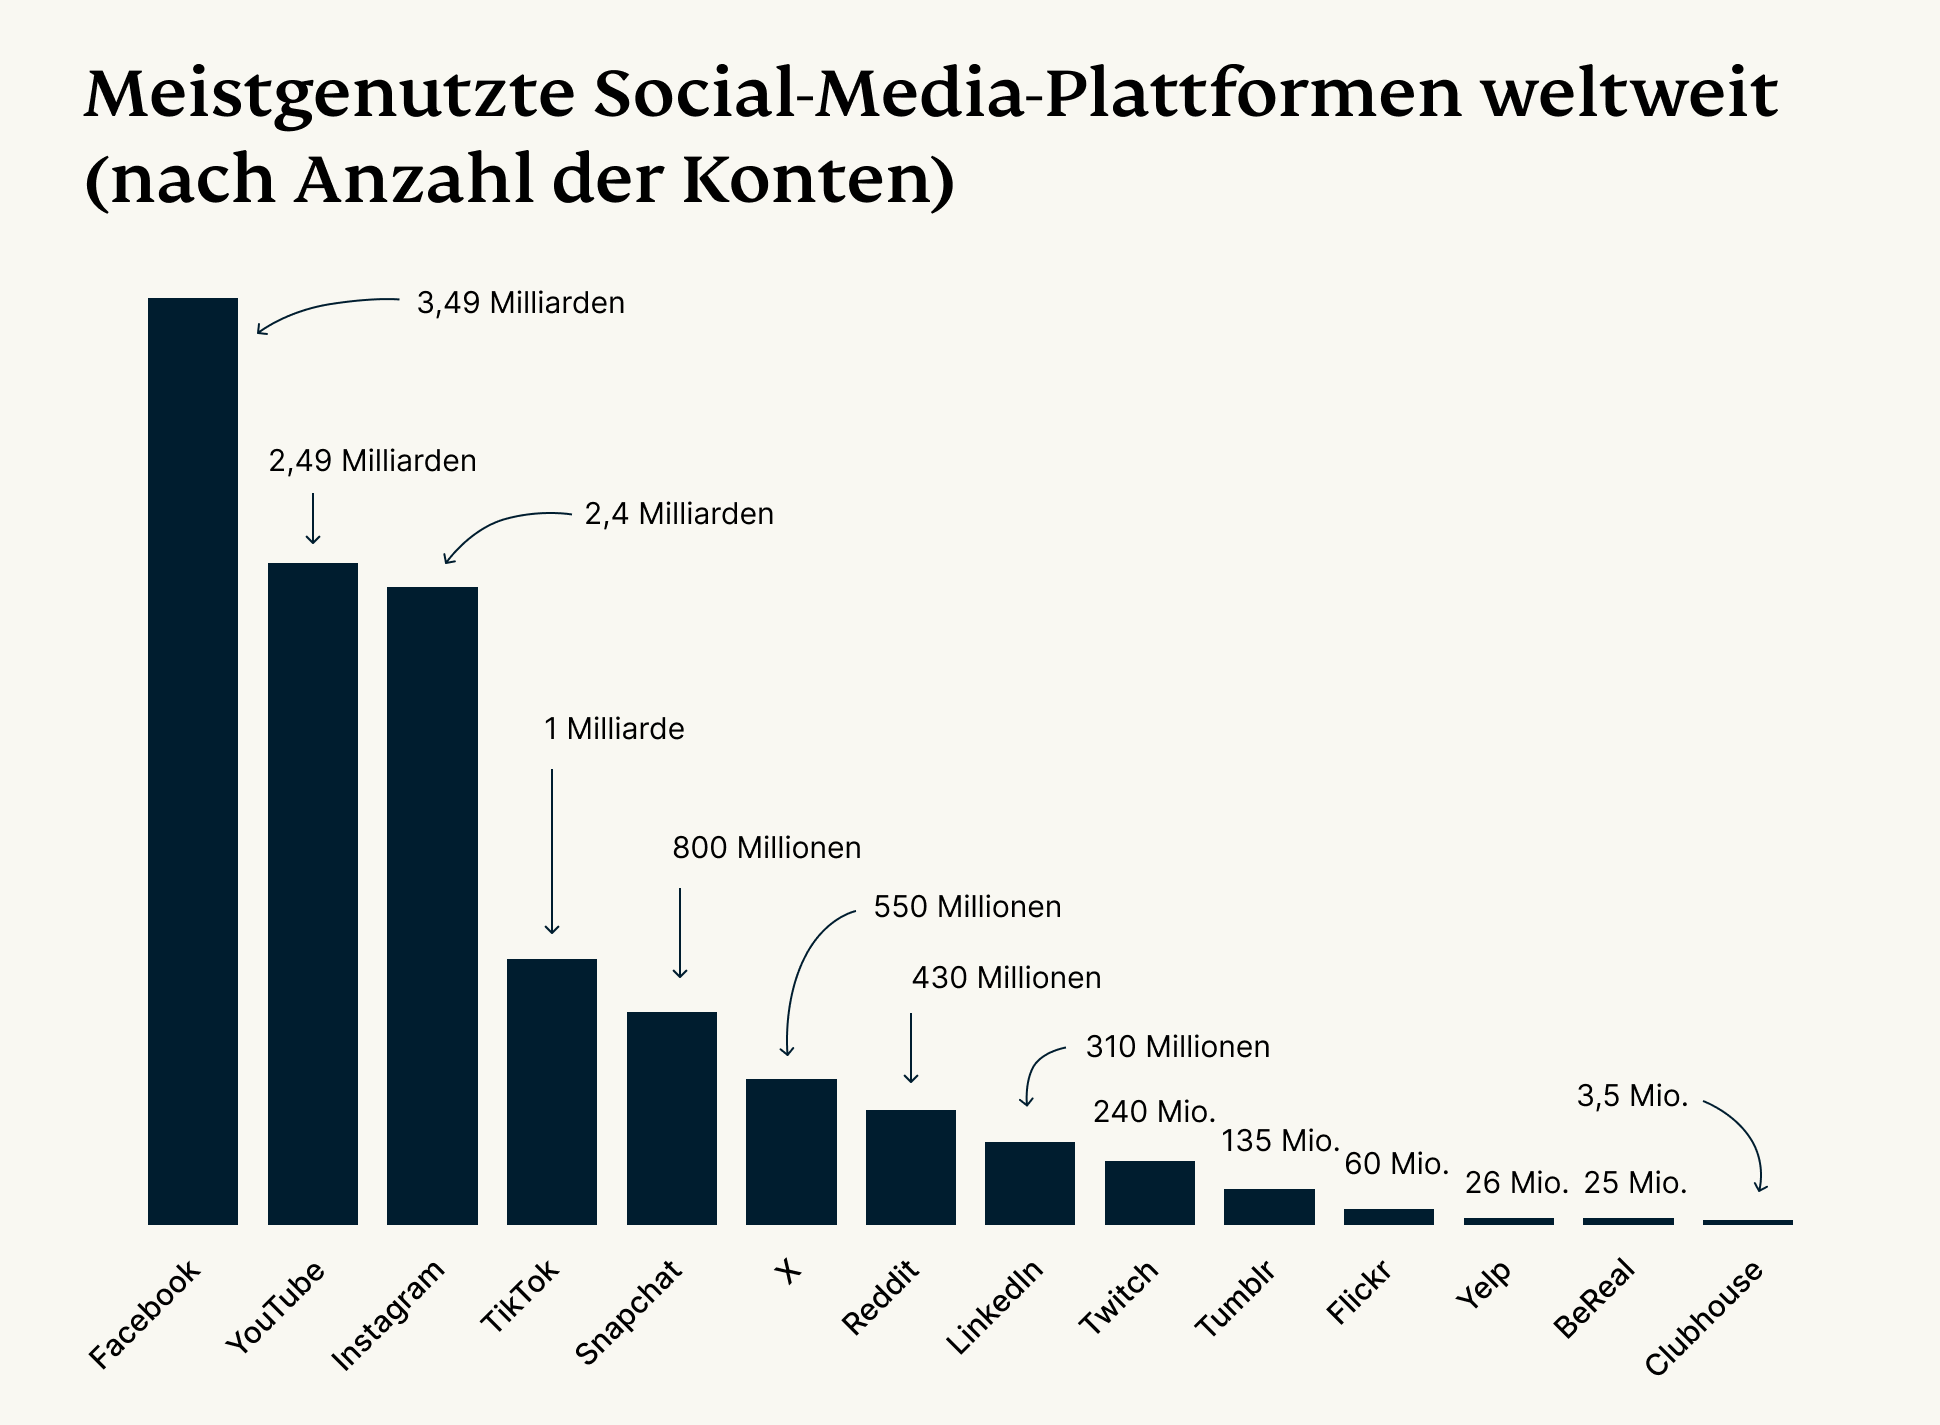 Weltweit meistgenutzte Social-Media-Plattformen nach Konten